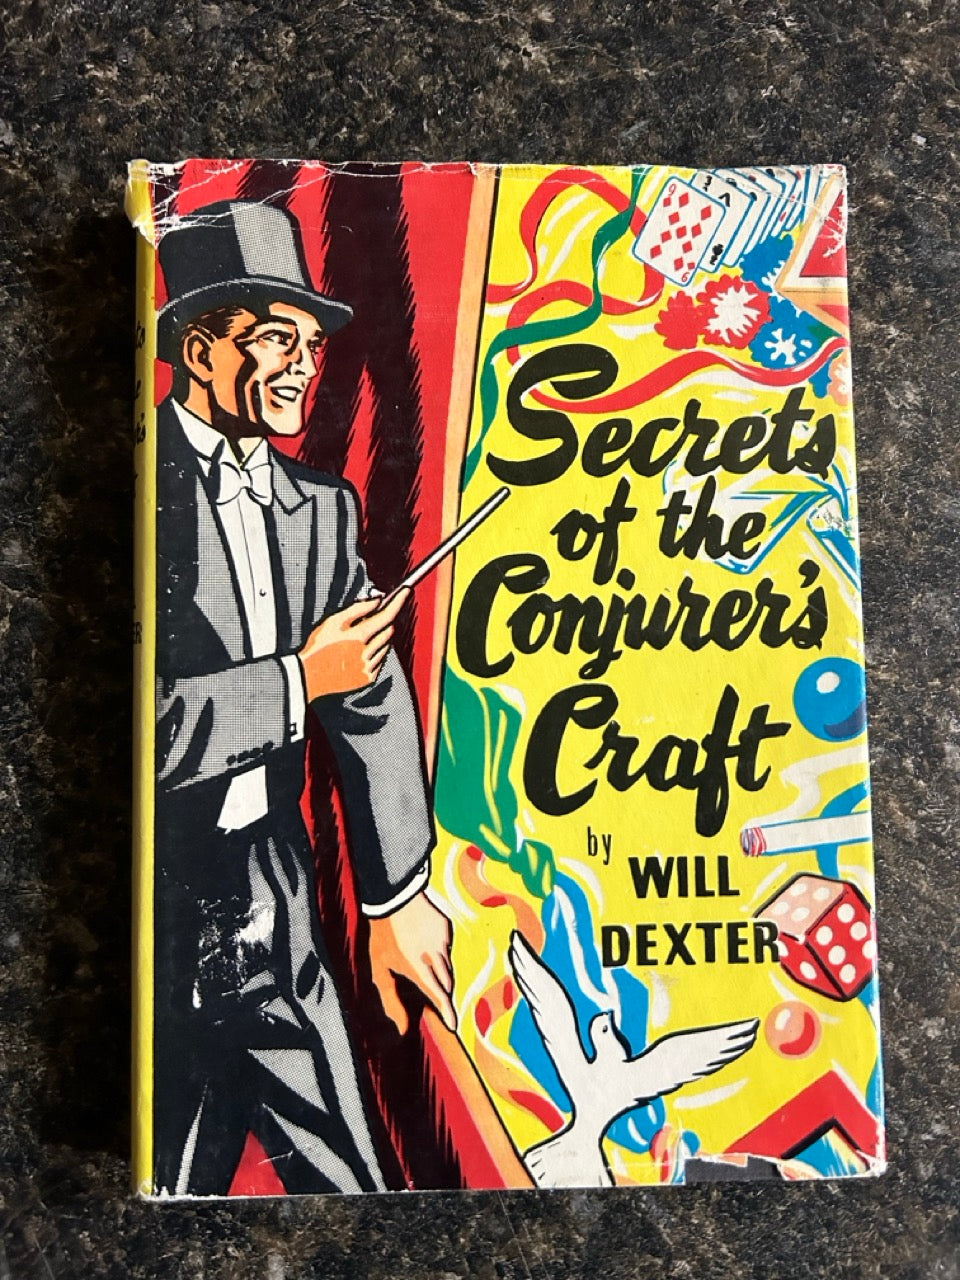 Secrets of the Conjurer's Craft - Will Dexter